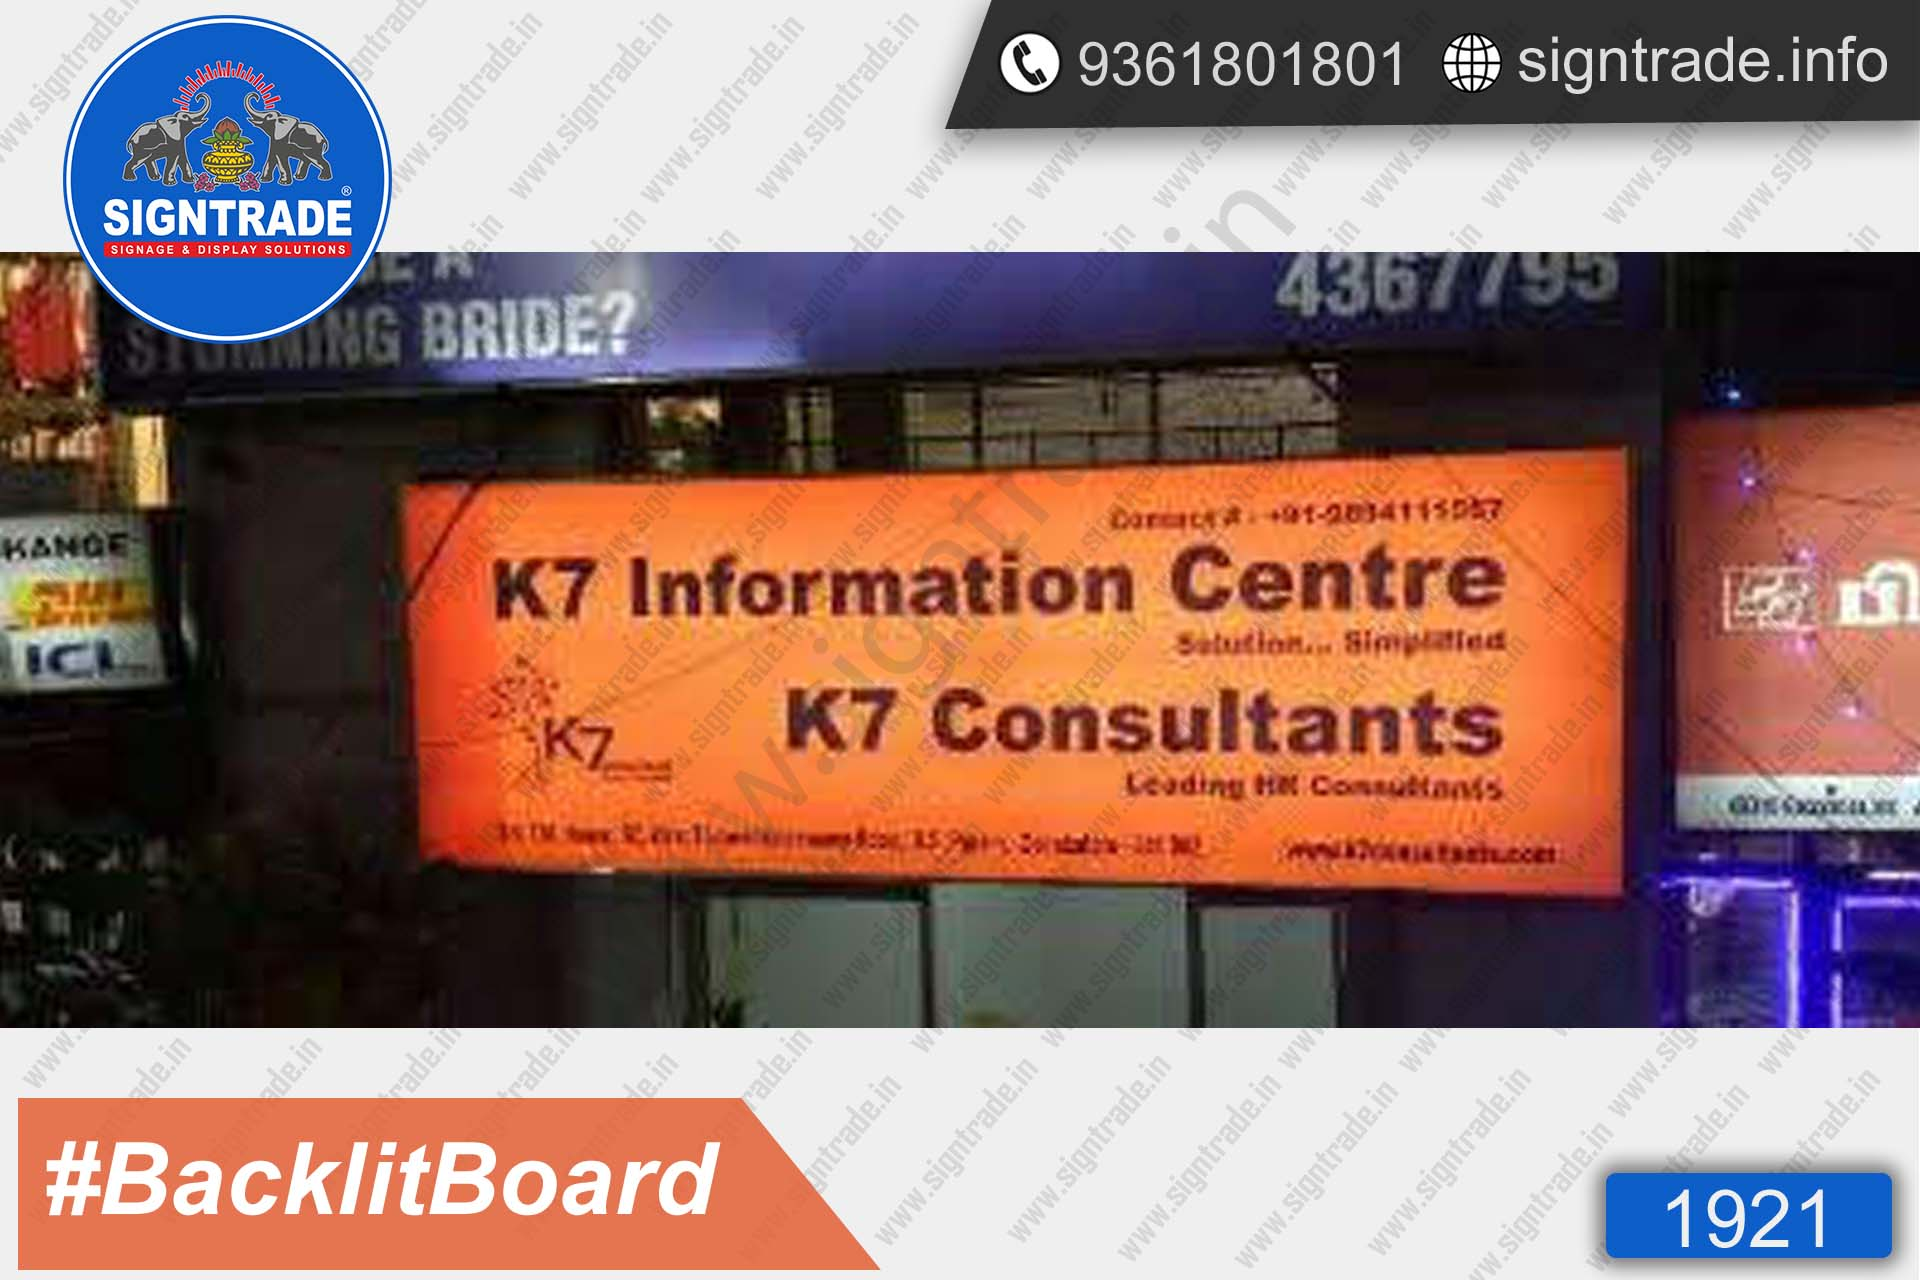 K7 Consultants Backlight Board